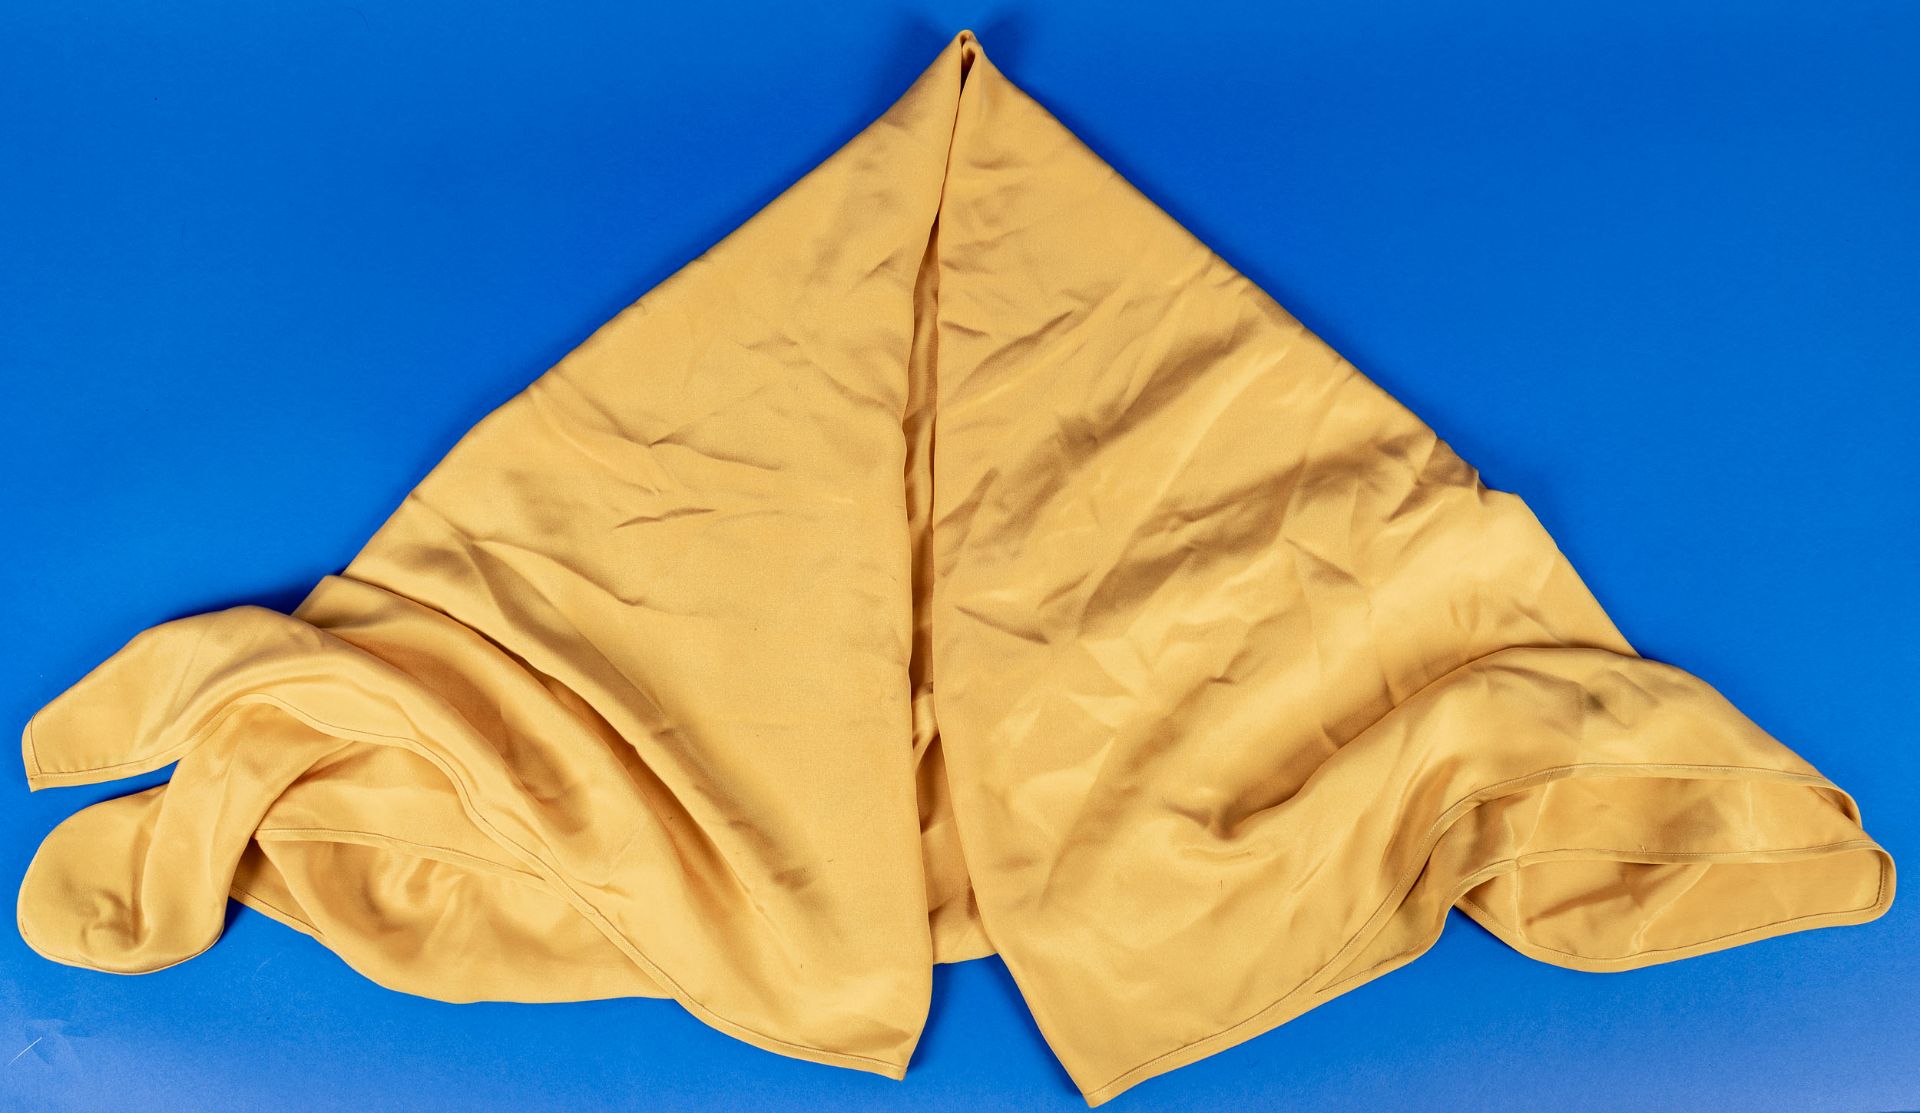 Sehr großes, gold-gelbes Tuch aus dem Hause Laura Biagotti, 100% Seide, ca. 140 x 140 cm; sehr schö - Image 3 of 3